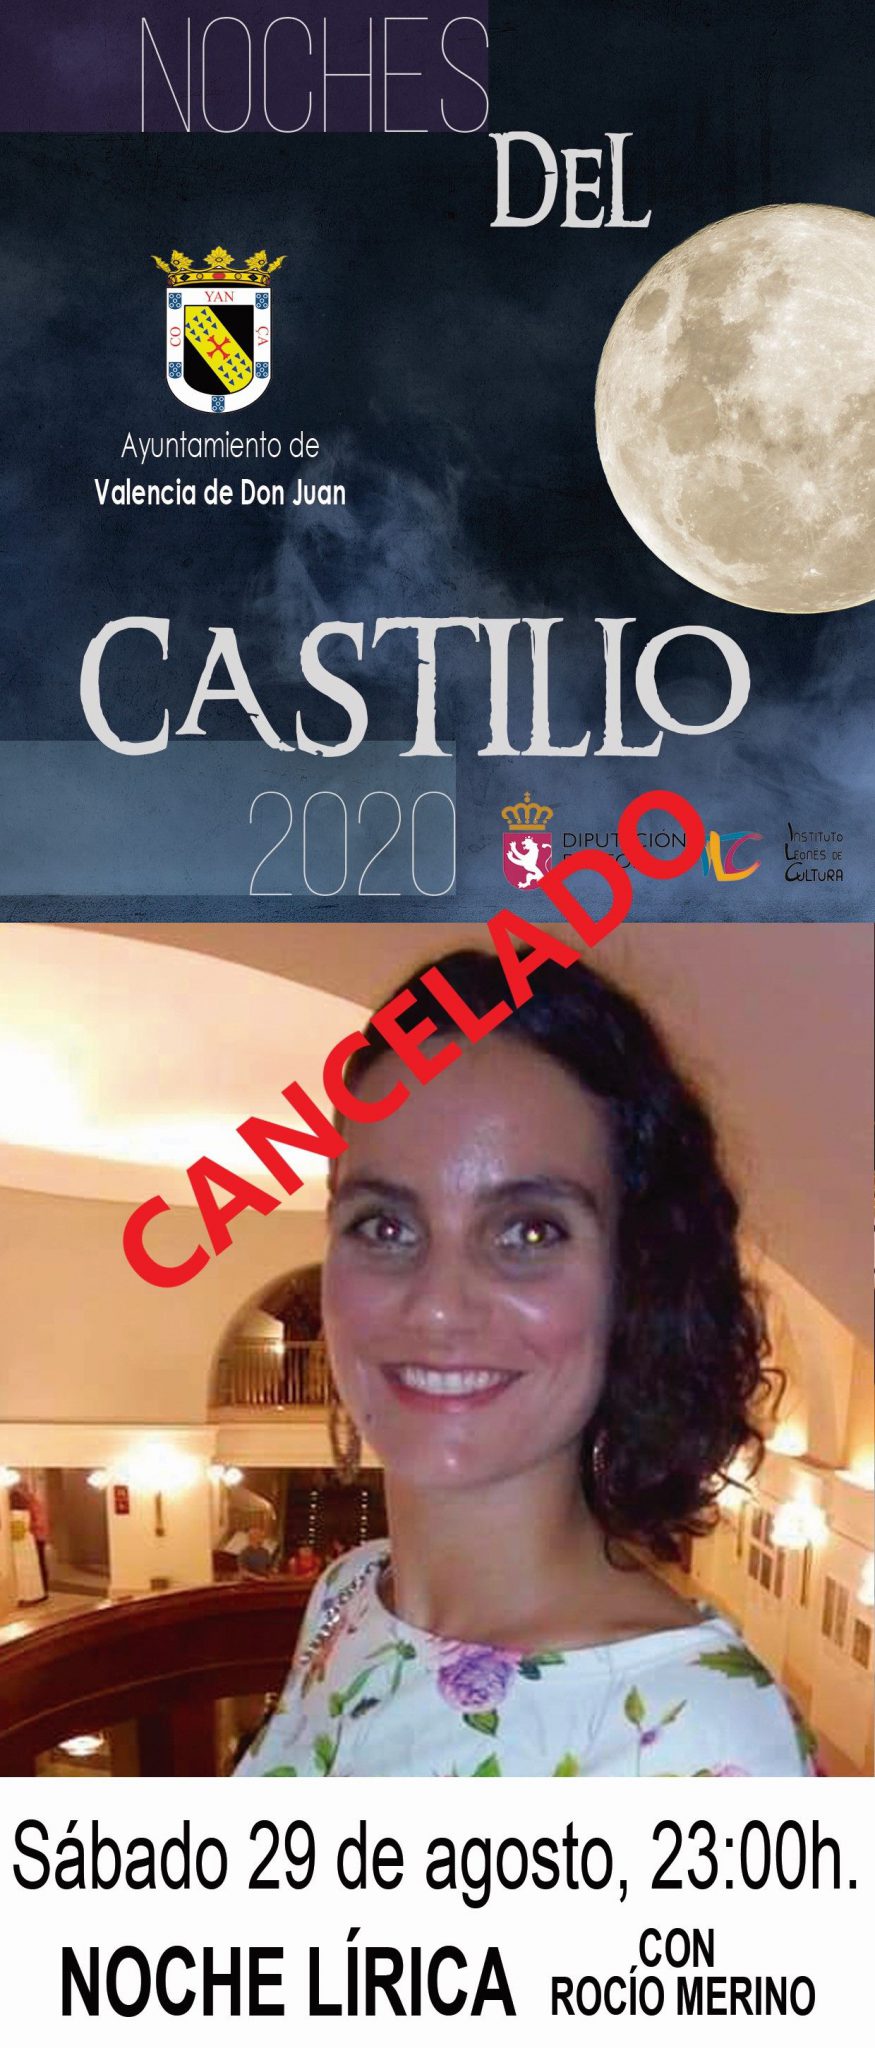 Suspensión del último concierto de las «Noches del Castillo»